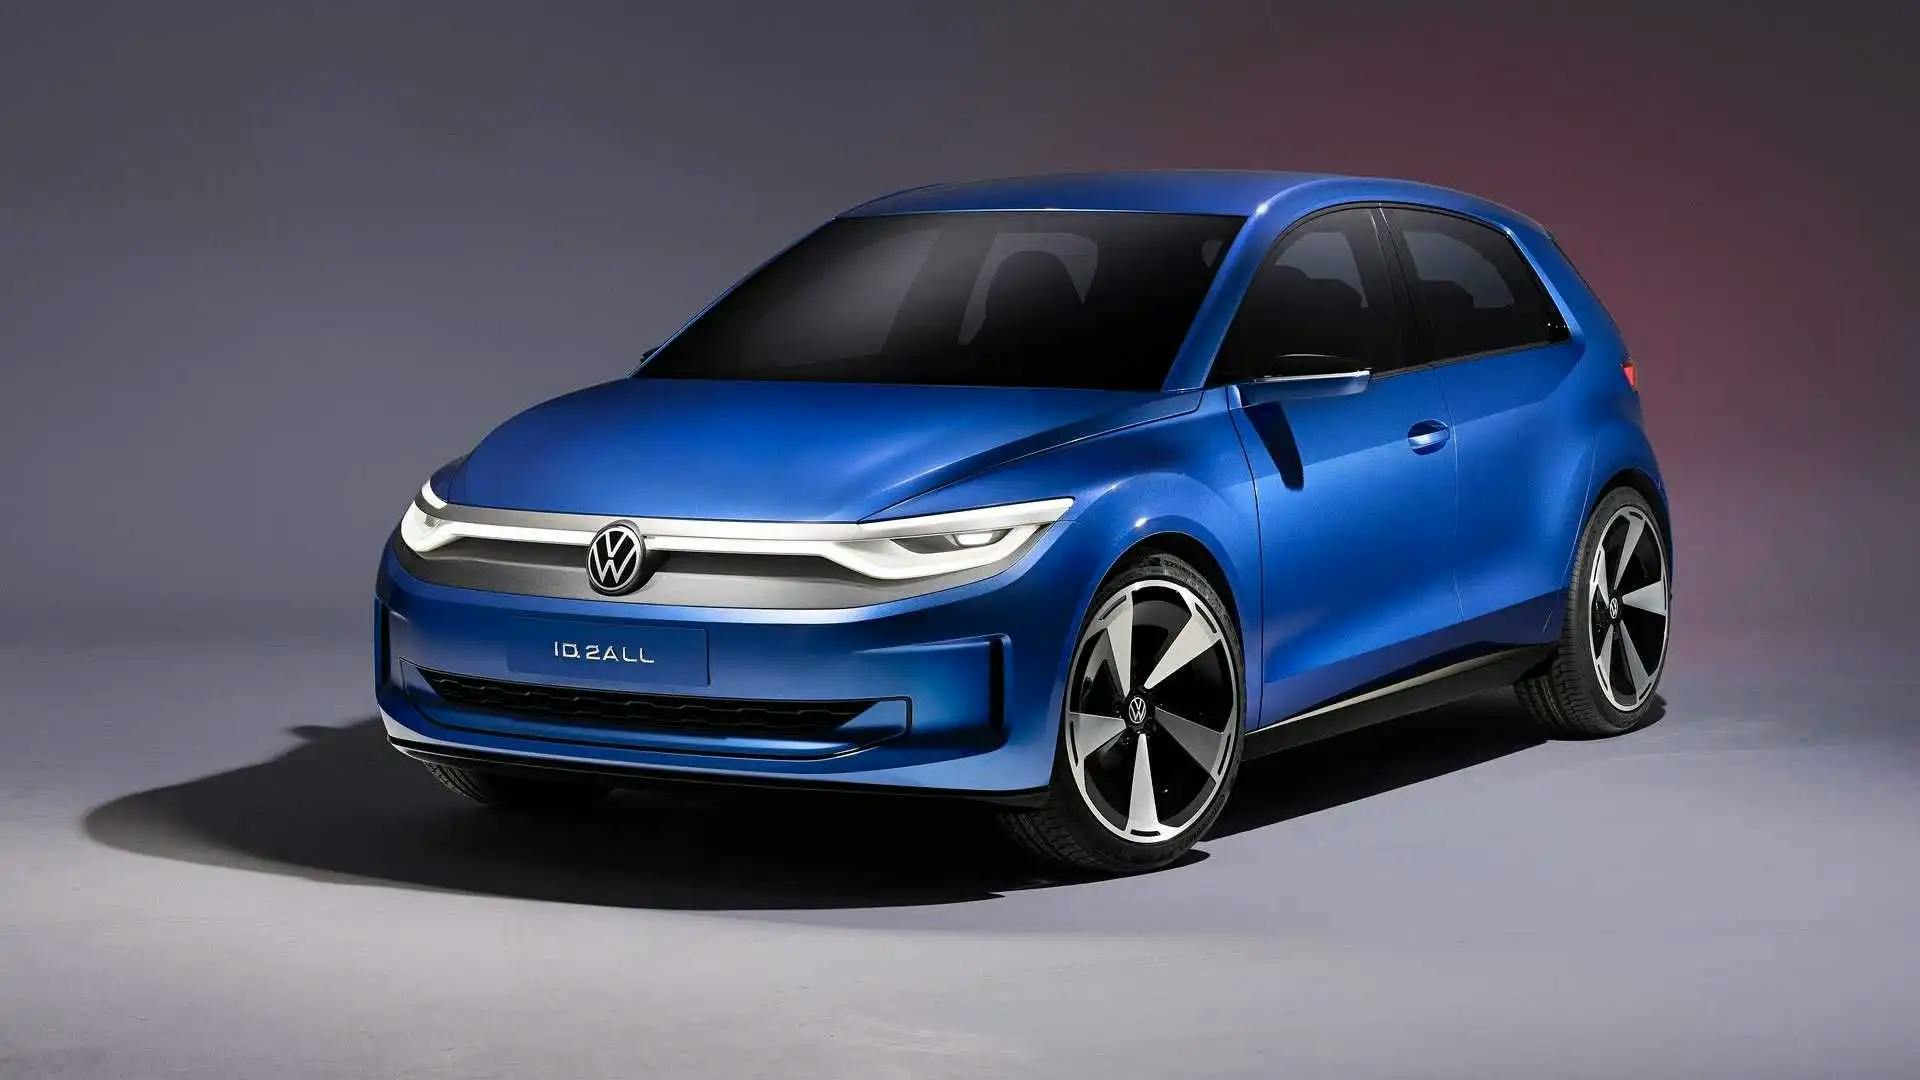 CEO-ul Volkswagen declară inutilă discuția în jurul combustibilului sintetic, deoarece motoarele cu ardere internă reprezintă o "tehnologie învechită"